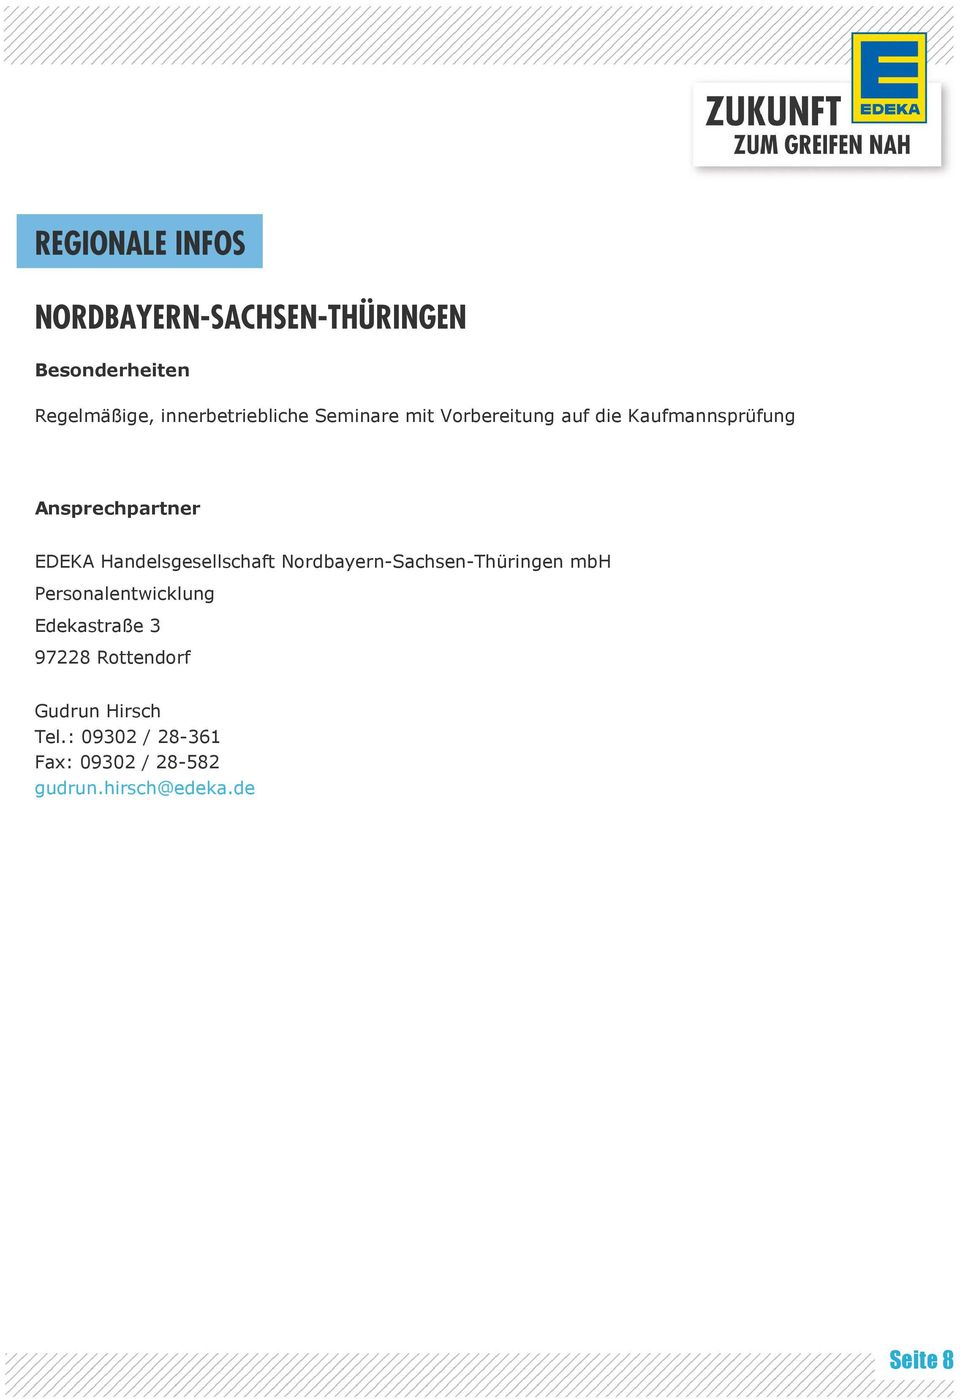 Nordbayern-Sachsen-Thüringen mbh Personalentwicklung Edekastraße 3 97228